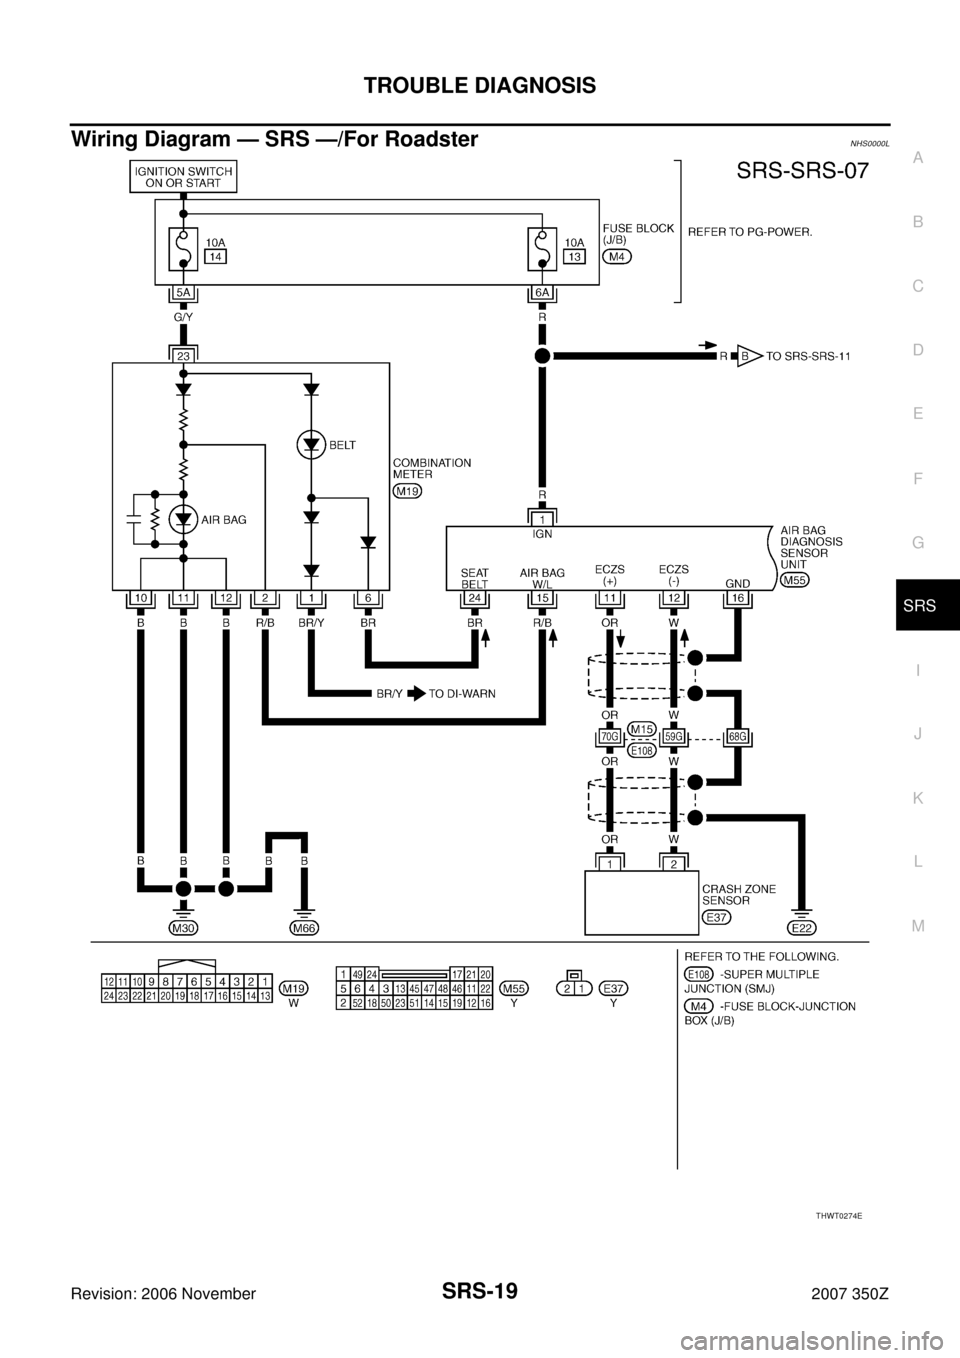 NISSAN 350Z 2007 Z33 Supplemental Restraint System User Guide TROUBLE DIAGNOSIS
SRS-19
C
D
E
F
G
I
J
K
L
MA
B
SRS
Revision: 2006 November2007 350Z
Wiring Diagram — SRS —/For RoadsterNHS0000L
THWT0274E 